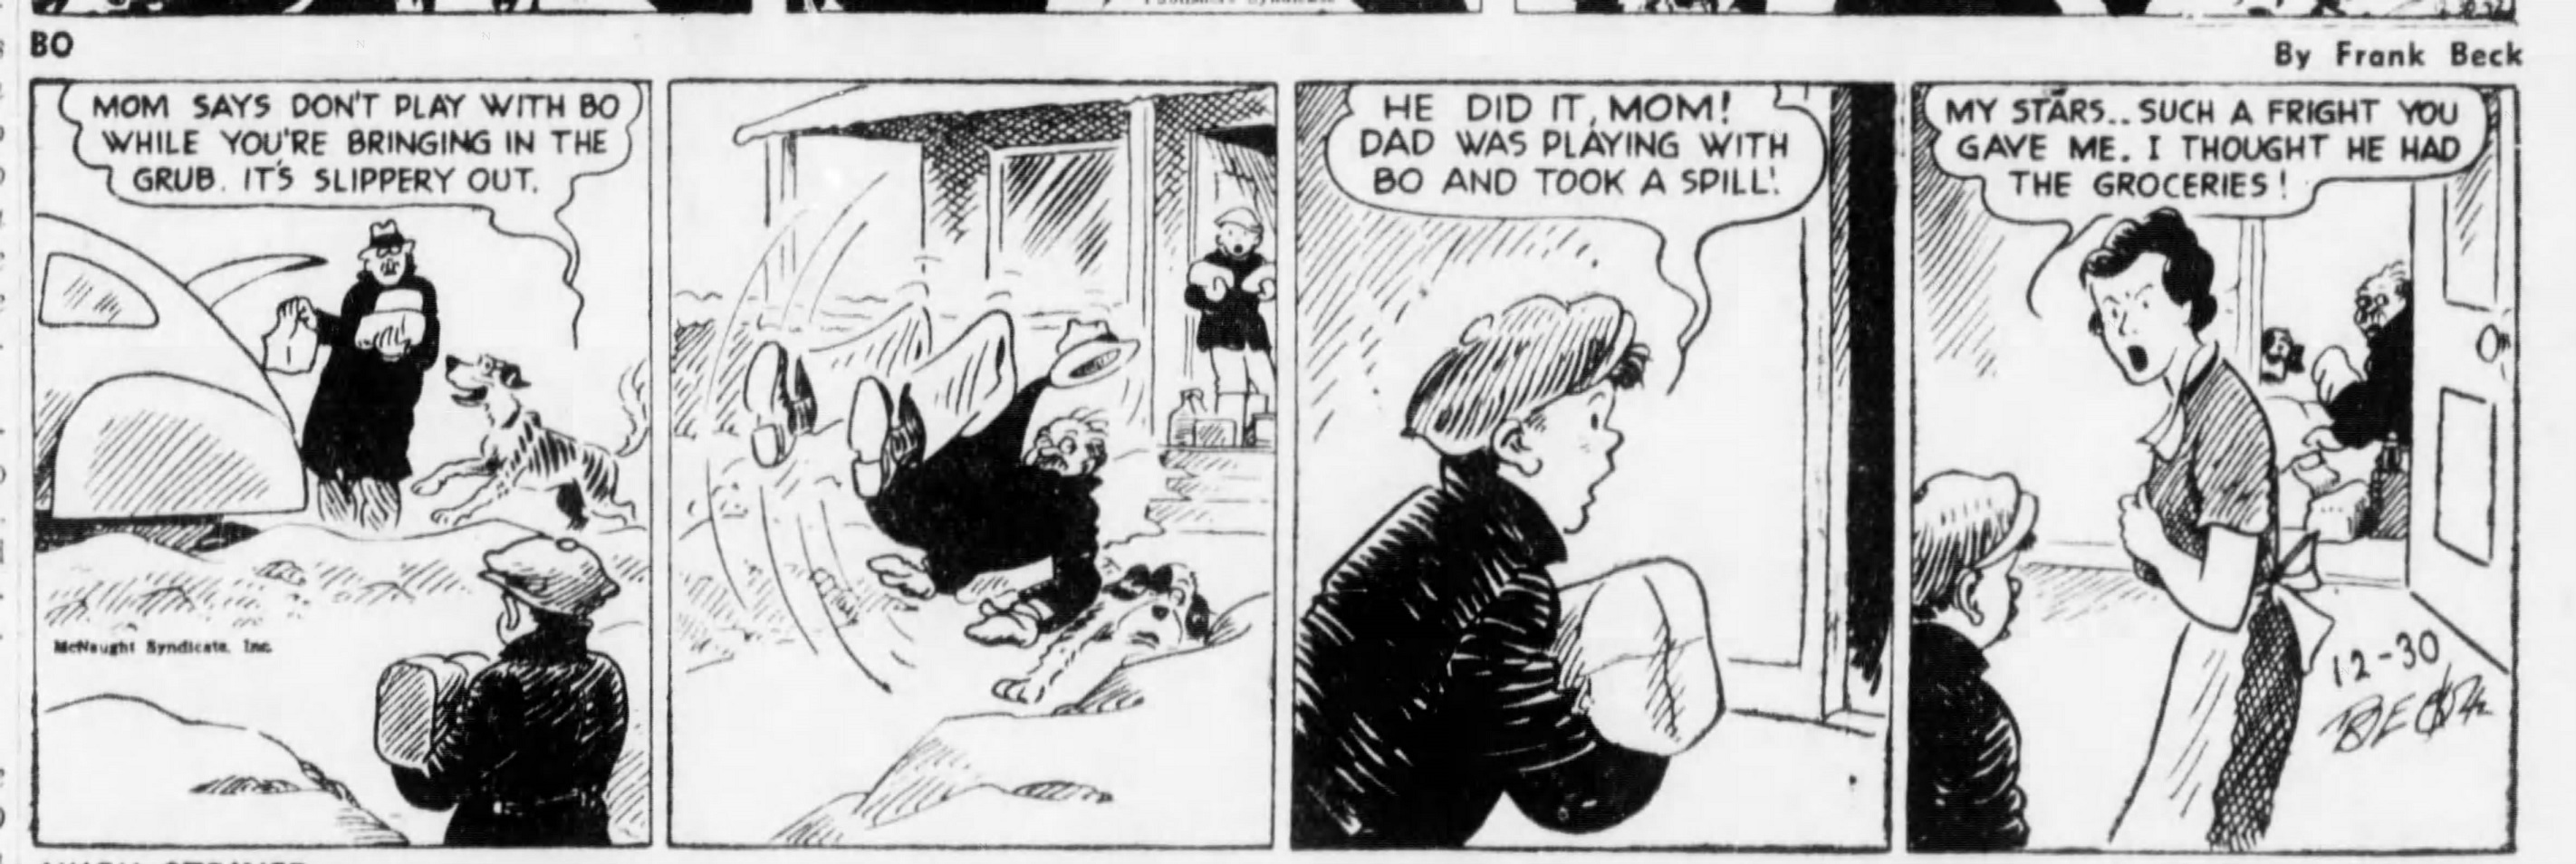 The_Brooklyn_Daily_Eagle_Wed__Dec_30__1942_(8).jpg